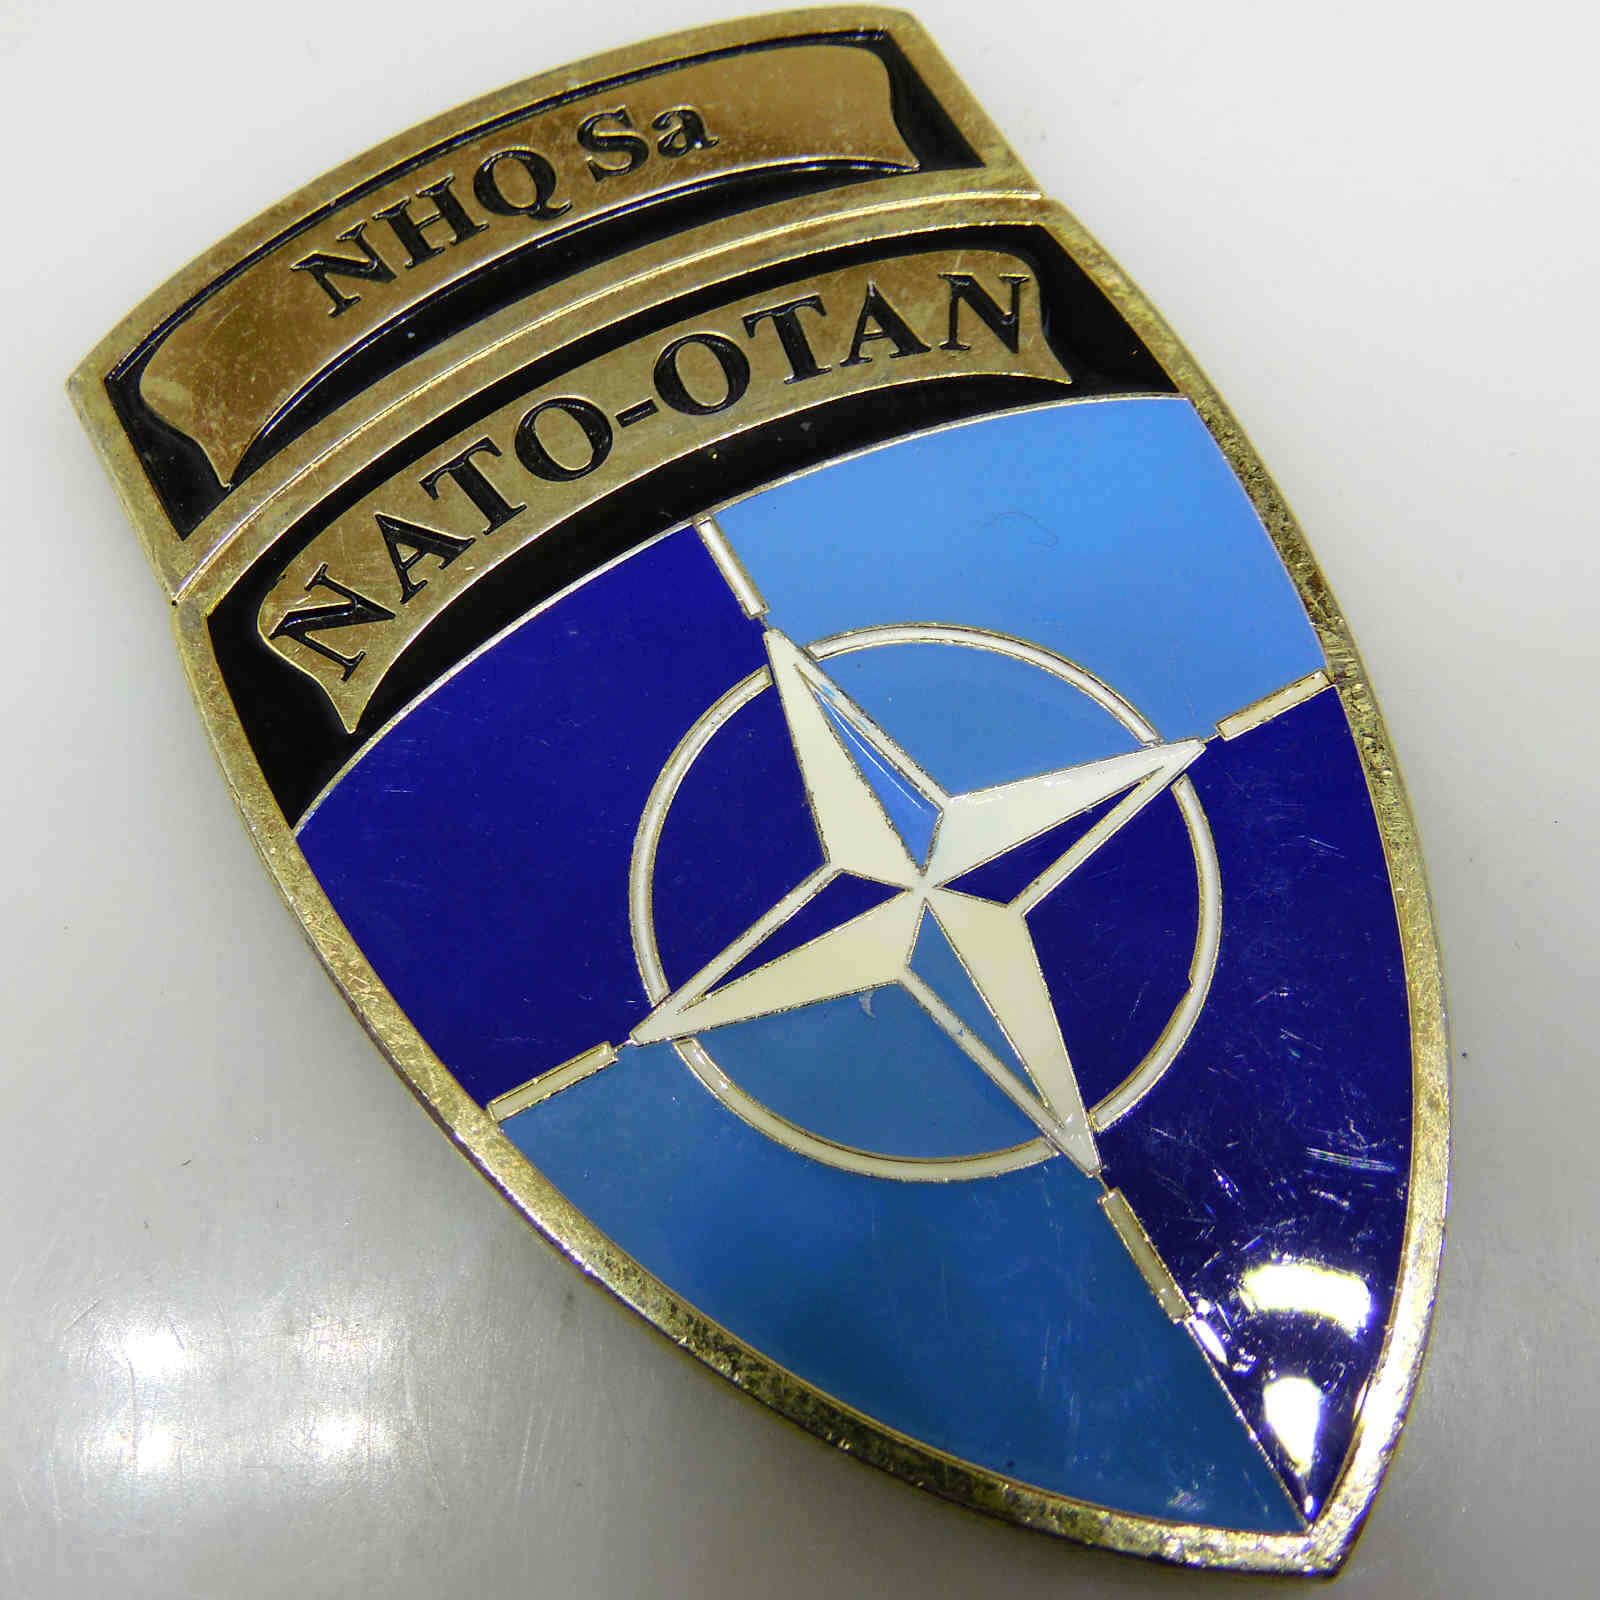 NATO OTAN NHQ SA NATO HEADQUARTERS BOSNIA AND HERZEGOVINA CHALLENGE COIN